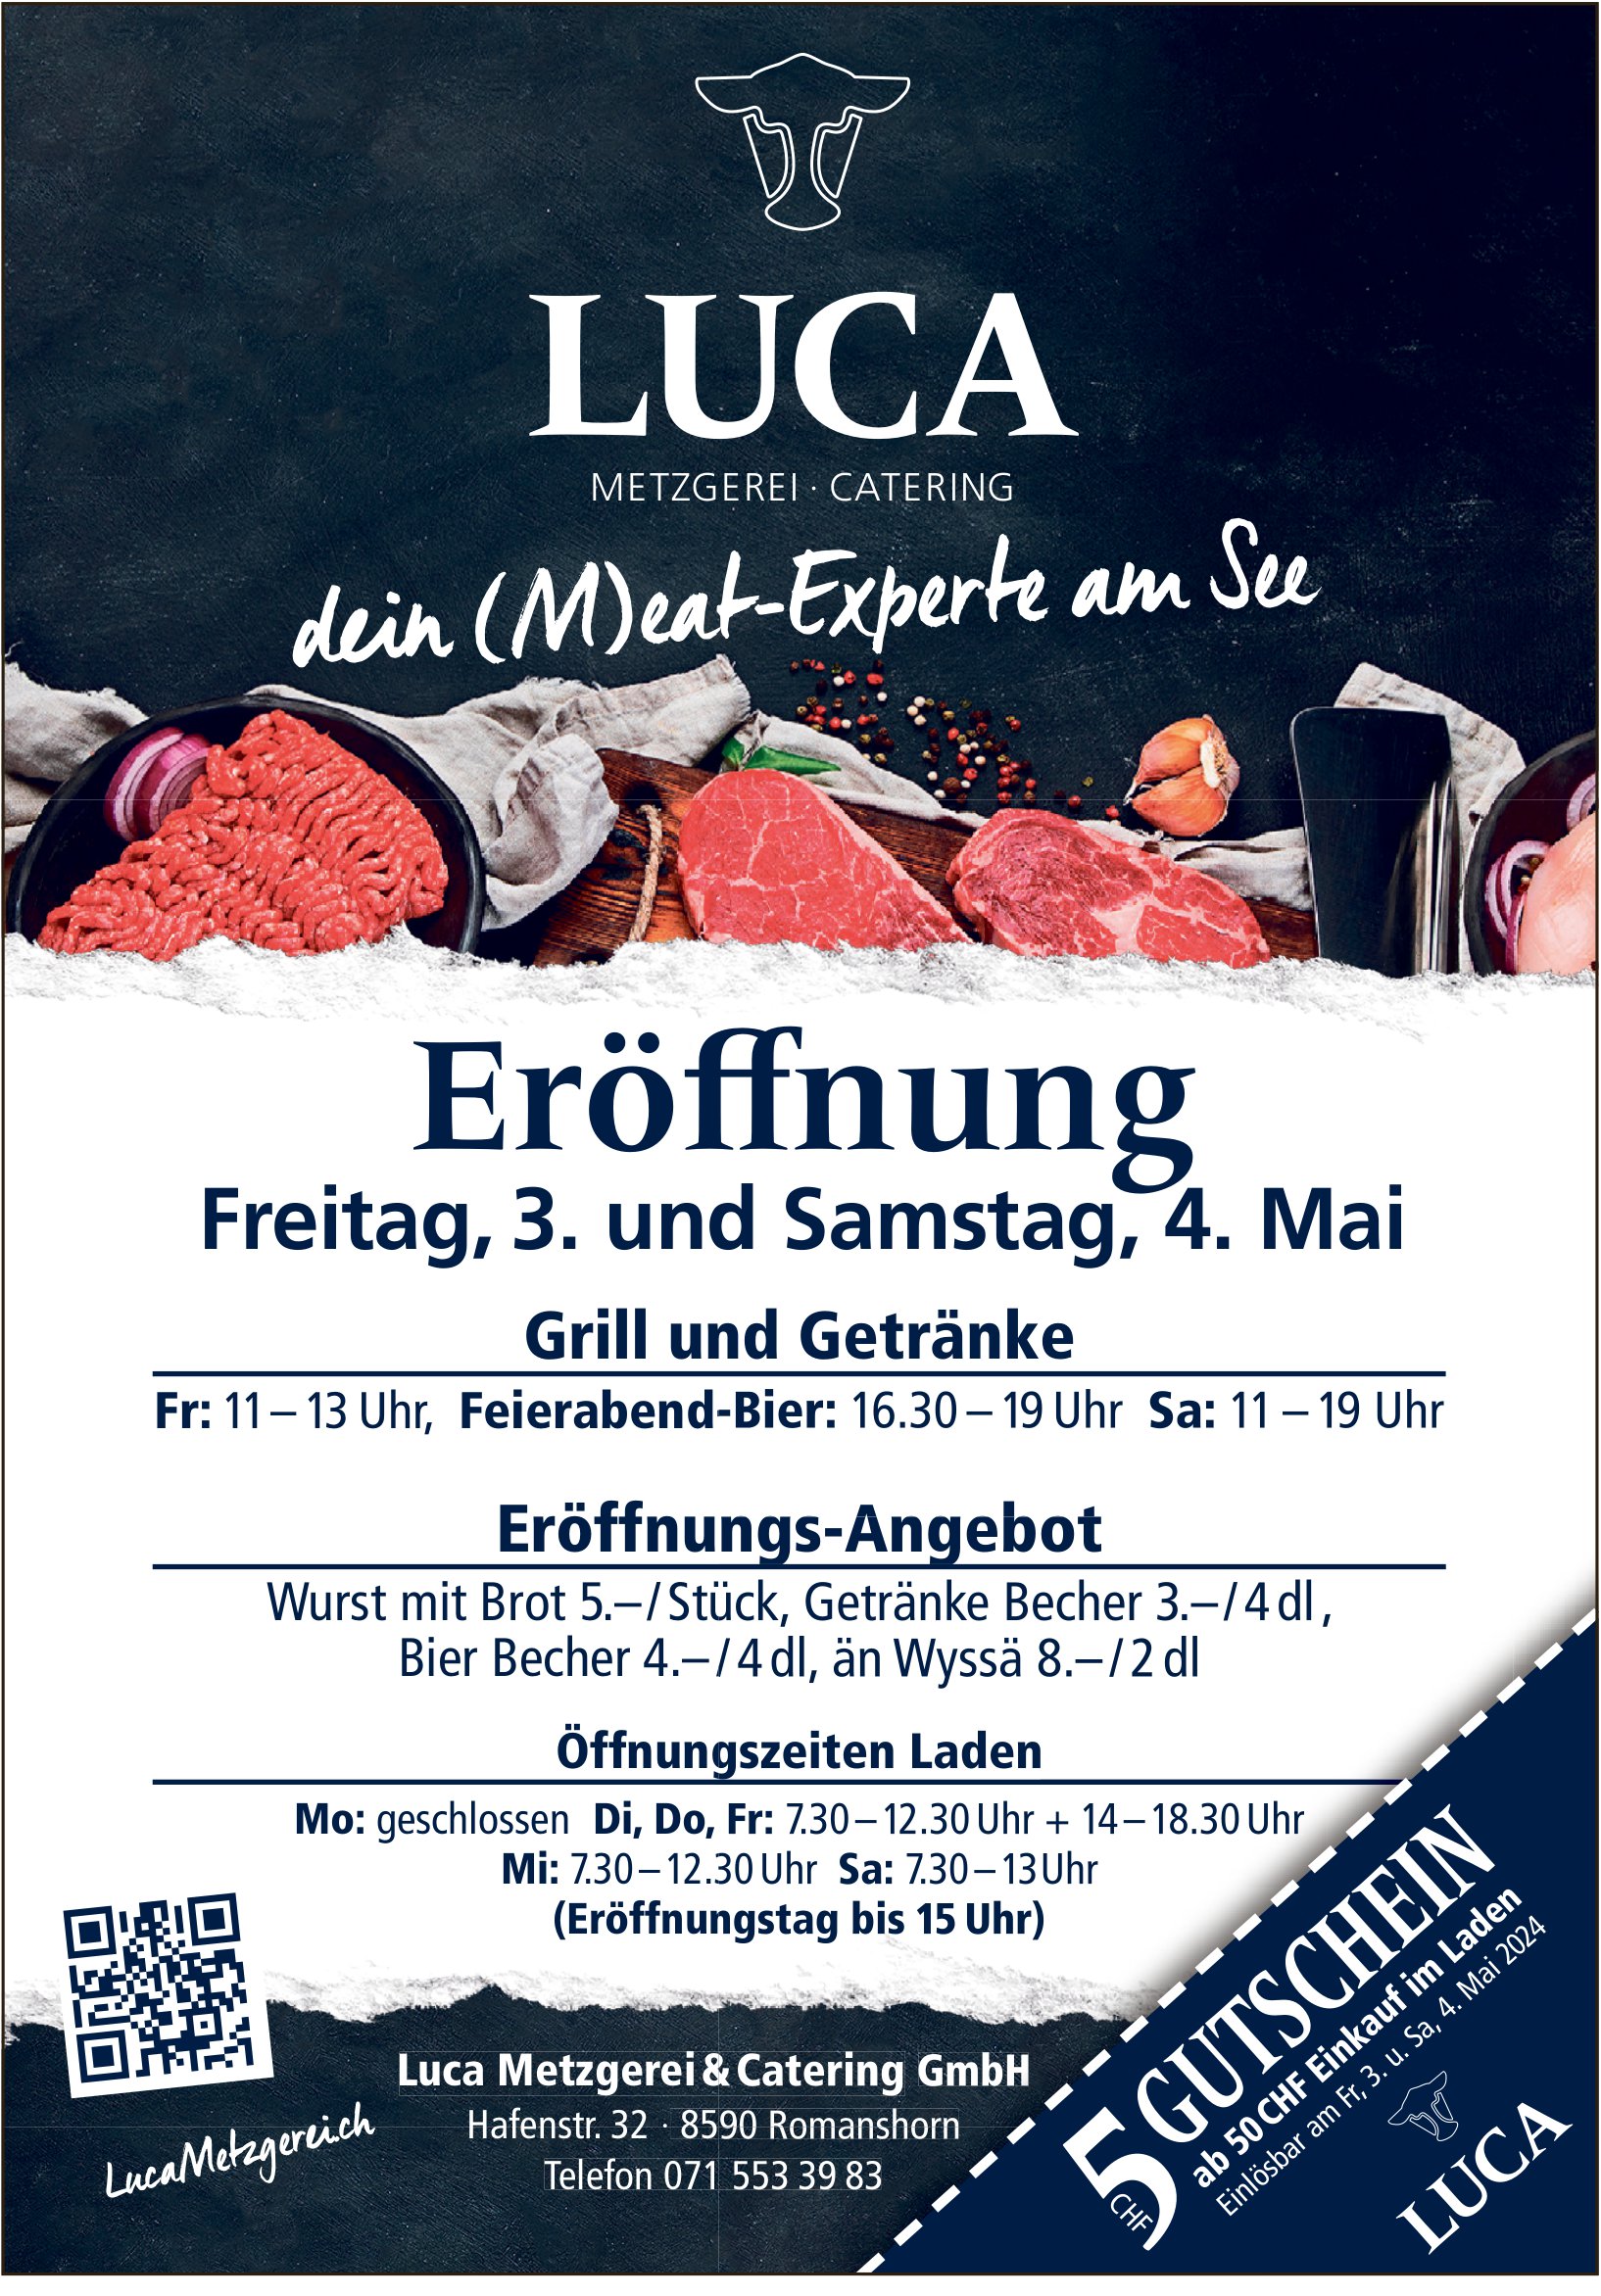 Eröffnung Luca Metzgerei Catering, 3. - 4. Mai, Romanshorn